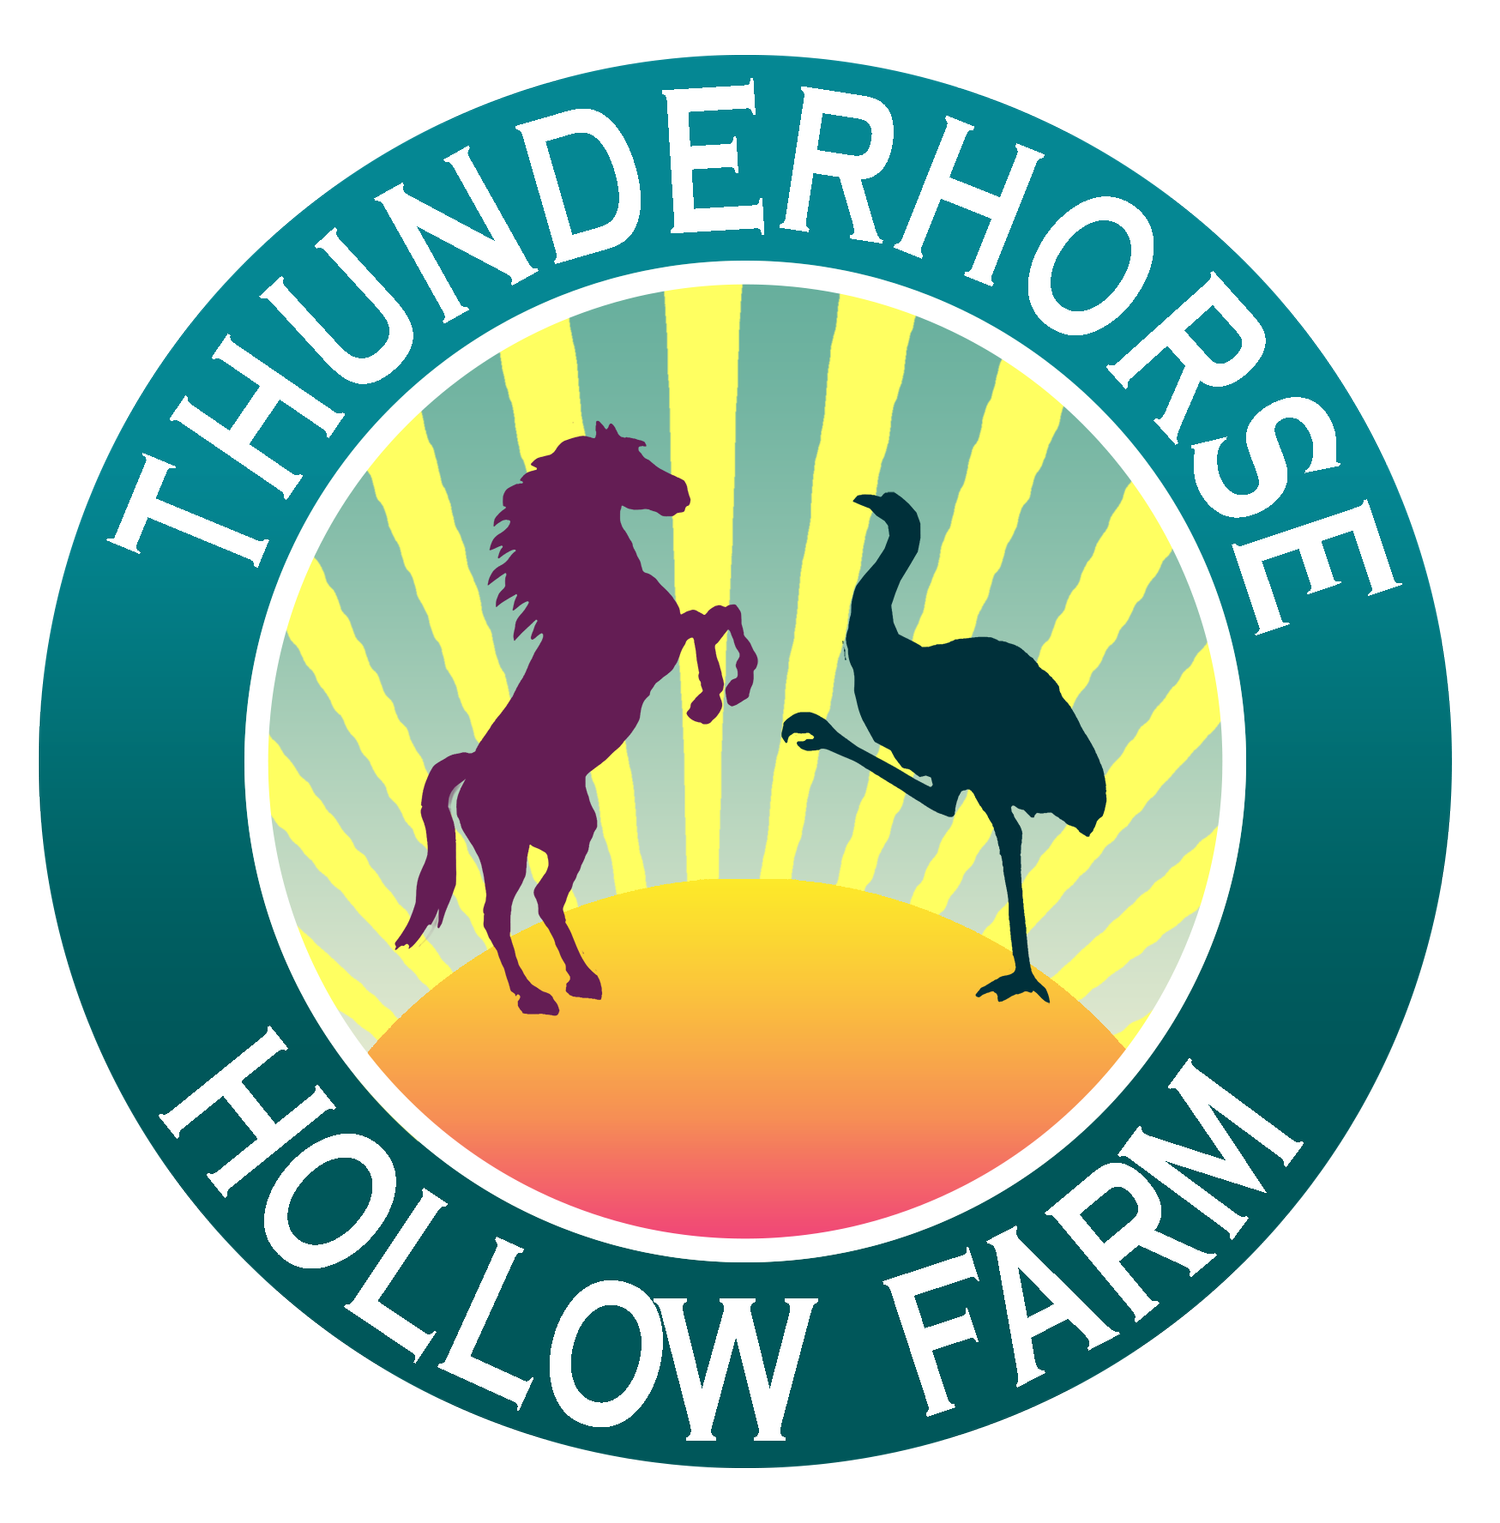 Thunderhorse Hollow Farm